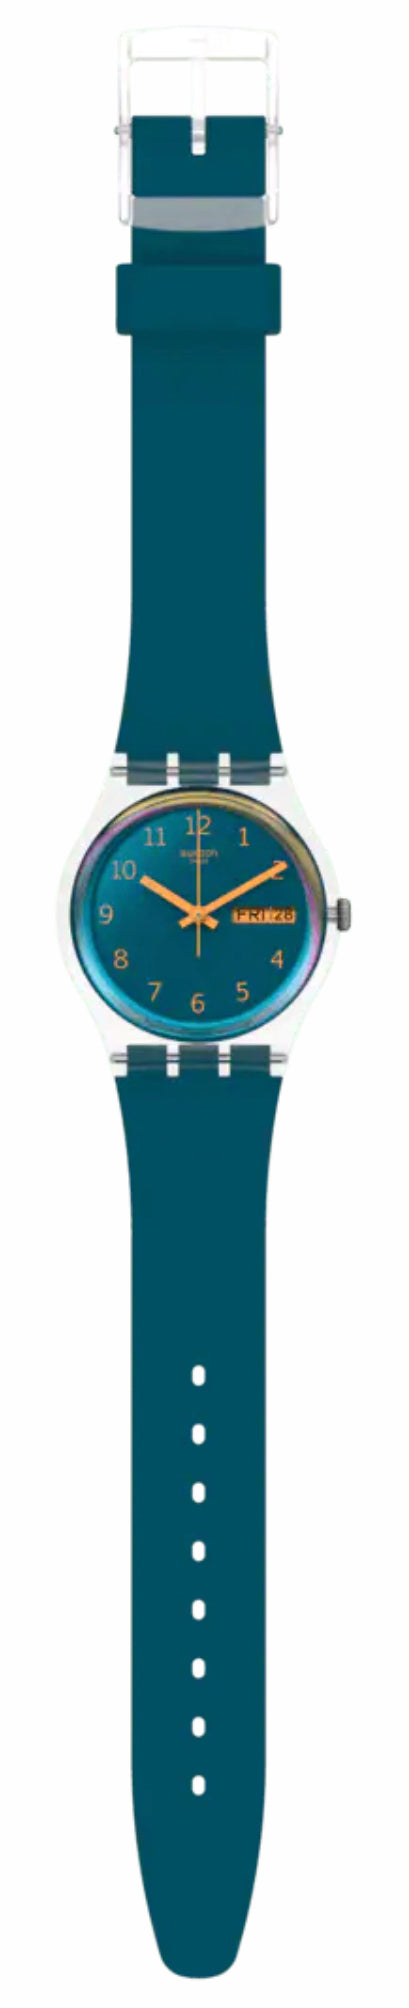 Swatch - Urbaholic - Blue Away Watch